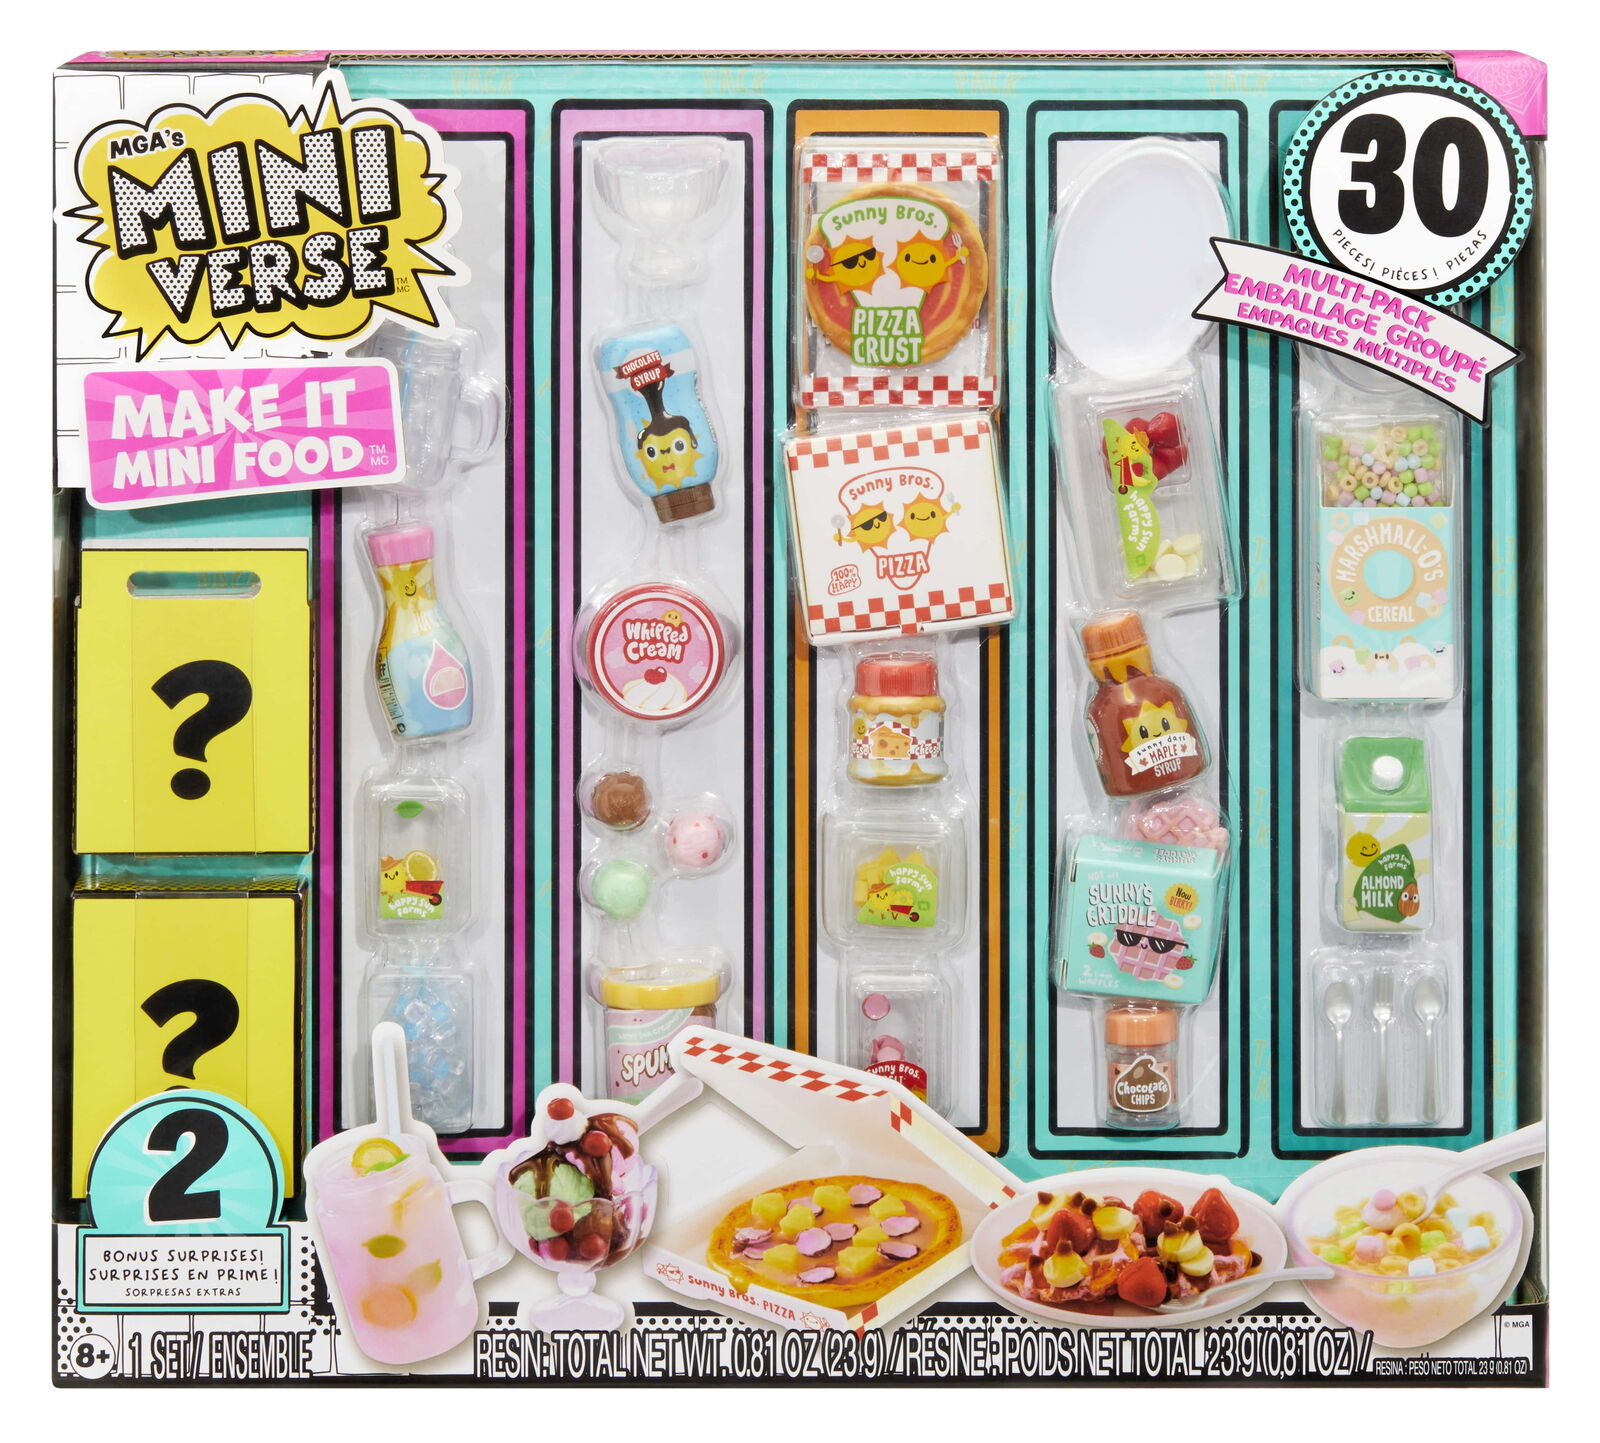 Make It Mini Food Multipack MGA's Miniverse, Collectibles, Not Edible, 8+